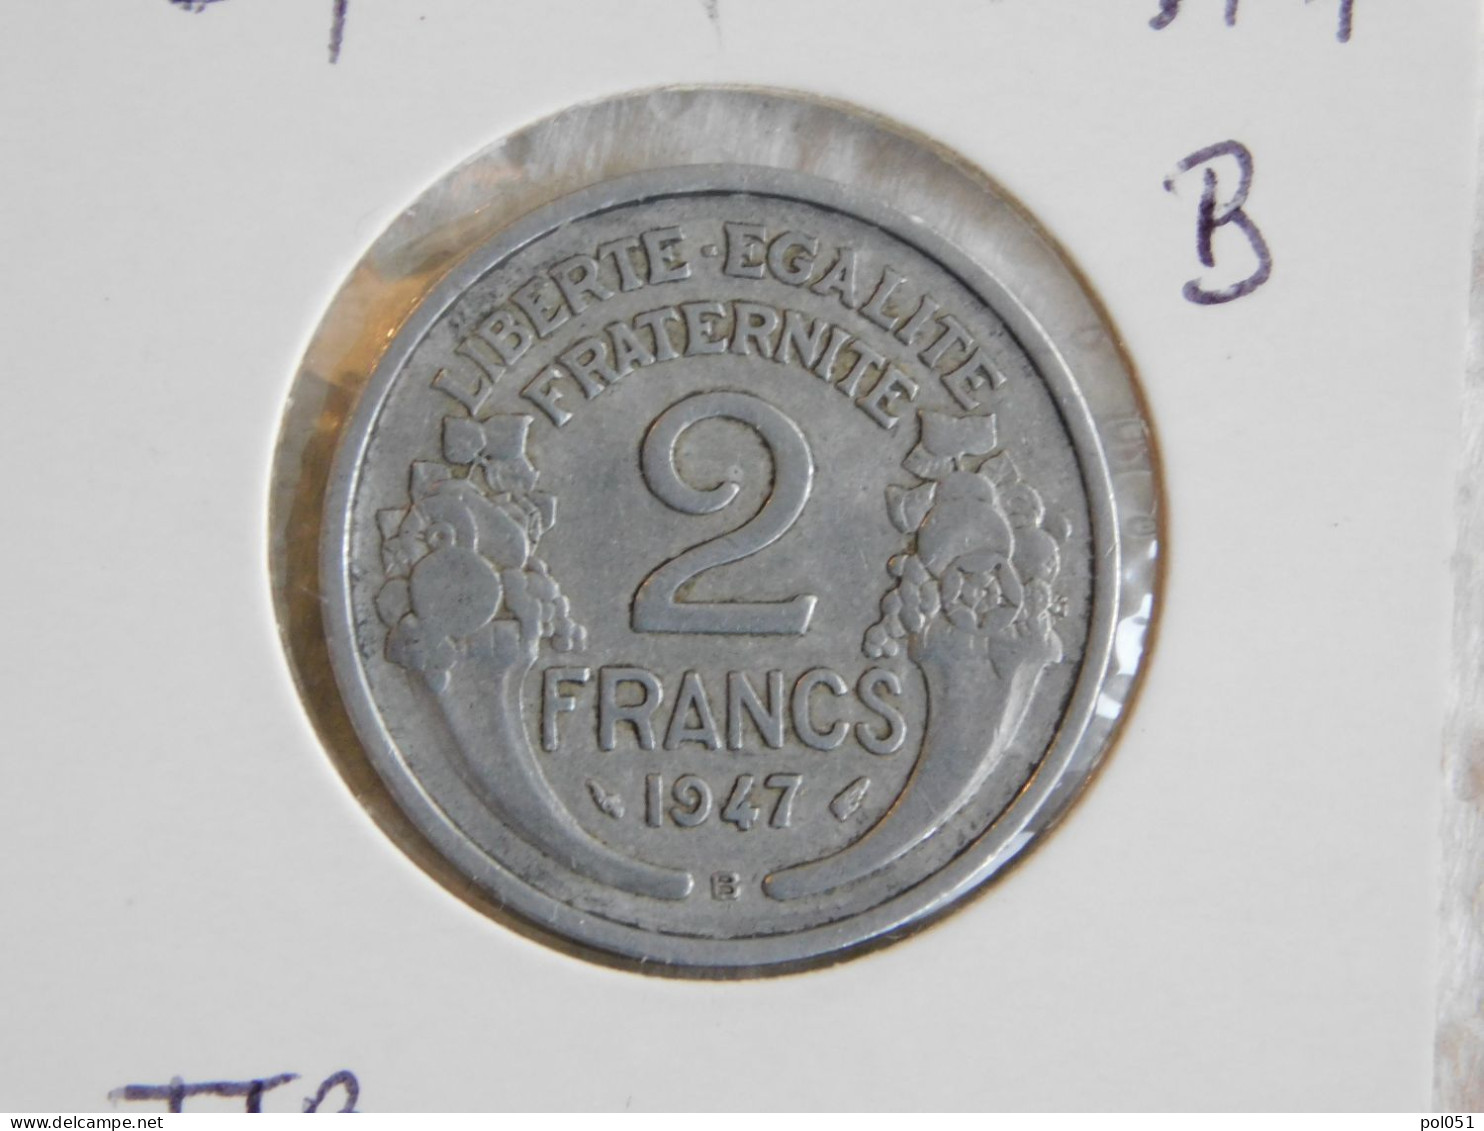 France 2 Francs 1947 B MORLON ALUMINIUM (819) - 2 Francs